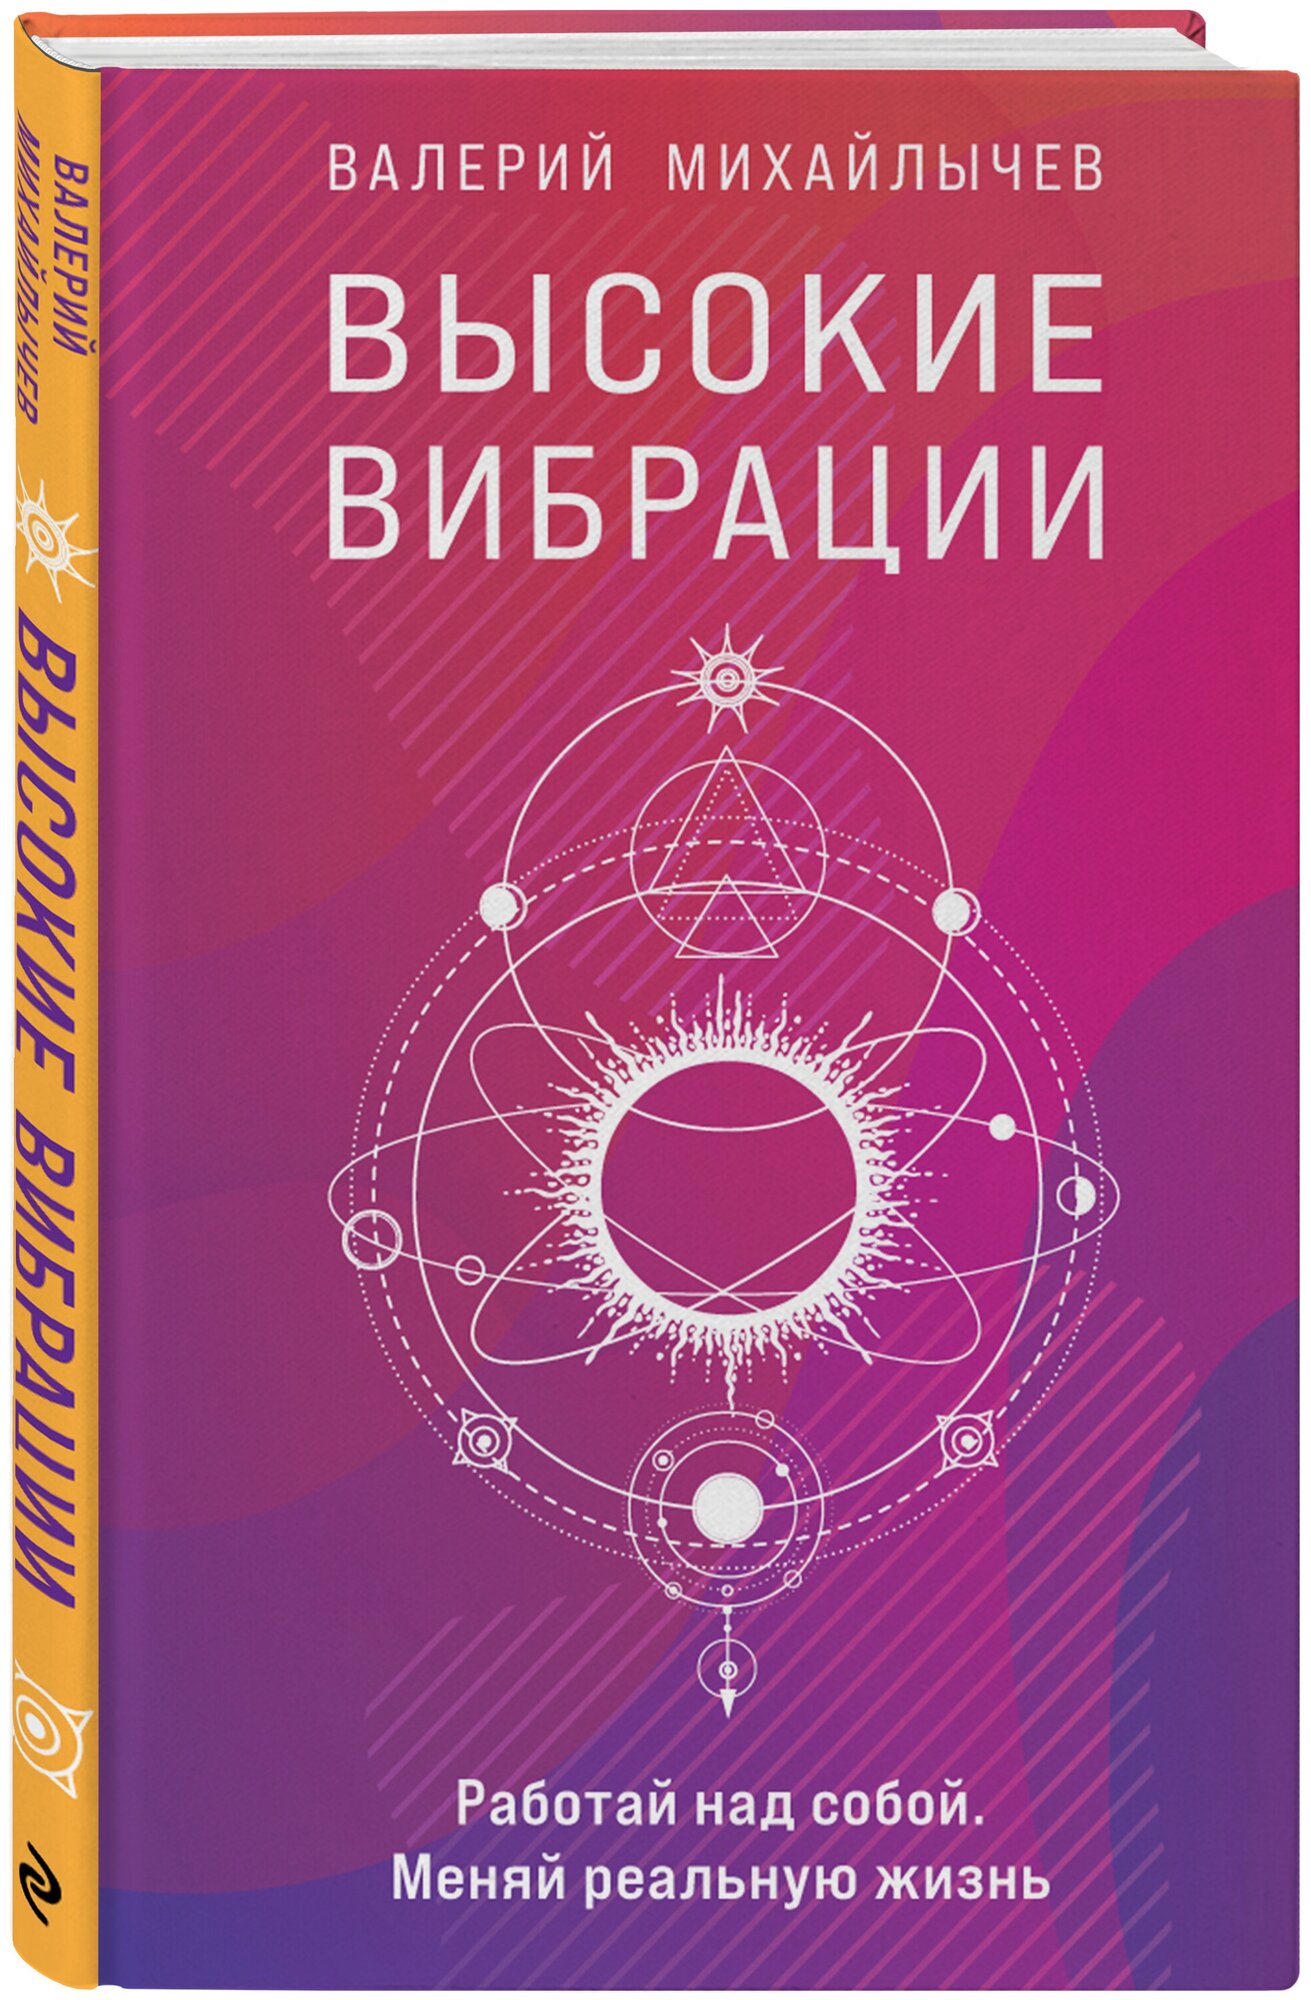 Михайлычев В. Высокие вибрации. Книга о работе над собой для положительных изменений в жизн